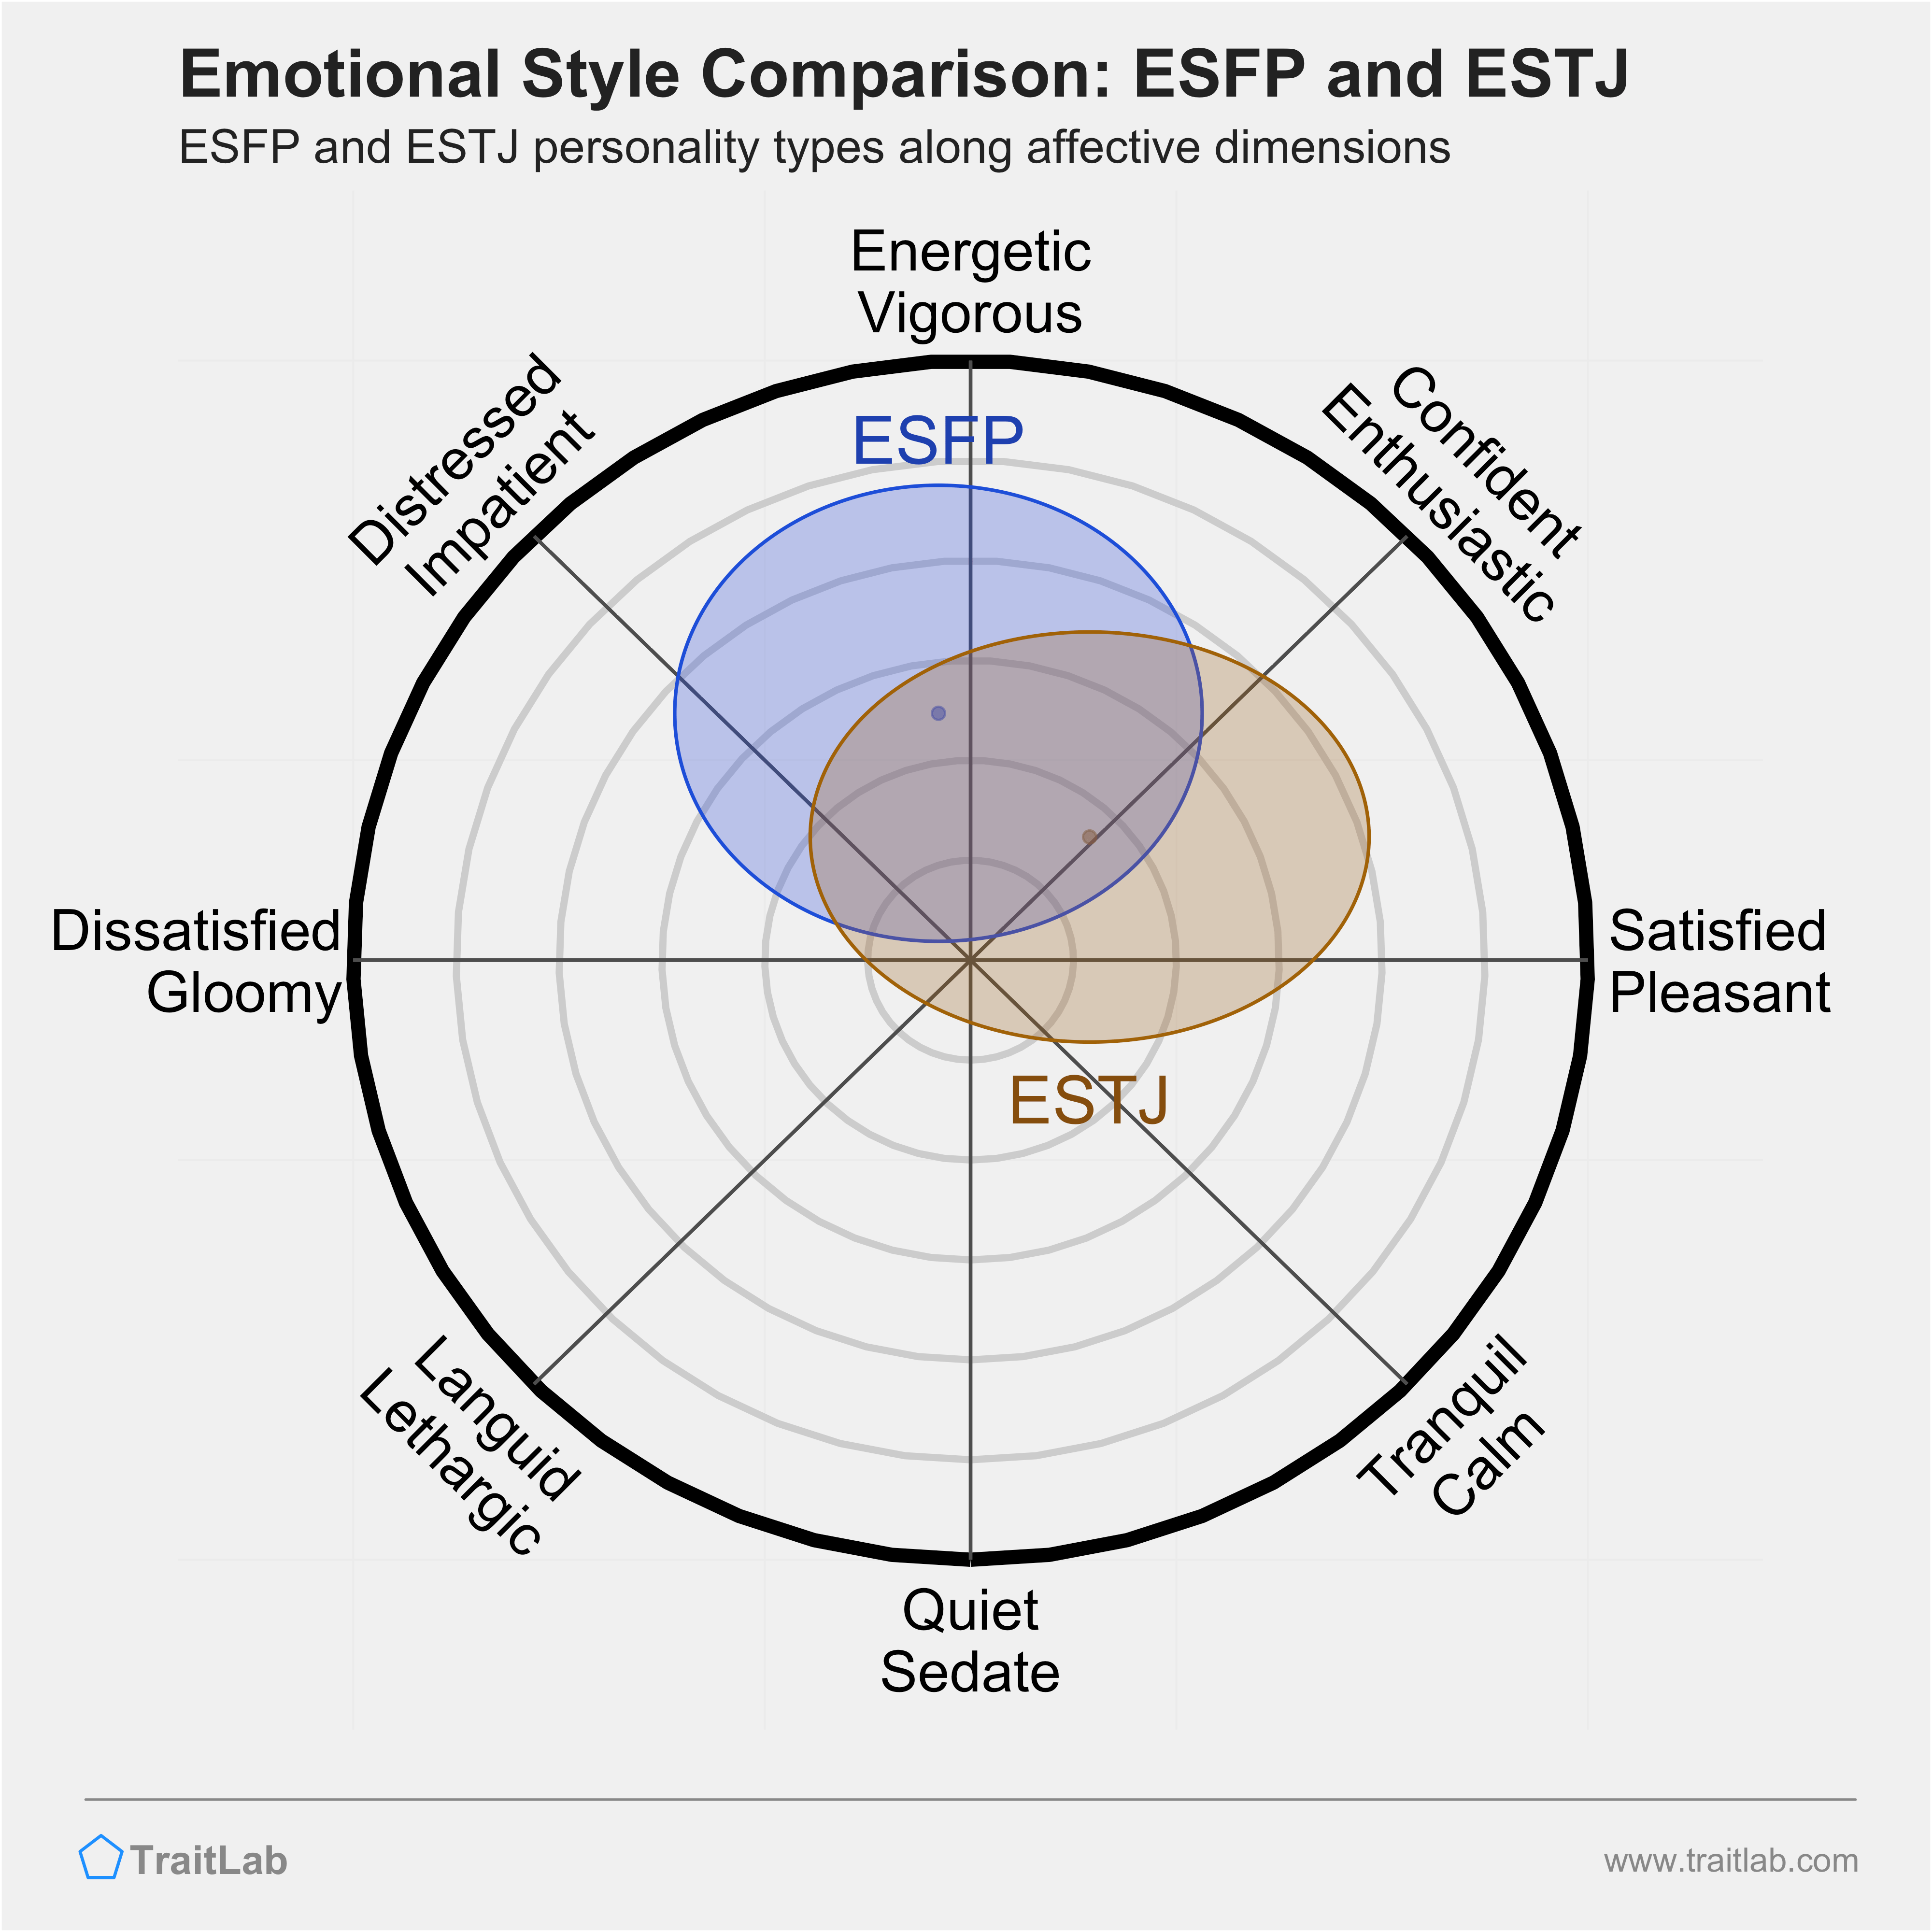 ESFP and ESTJ comparison across emotional (affective) dimensions